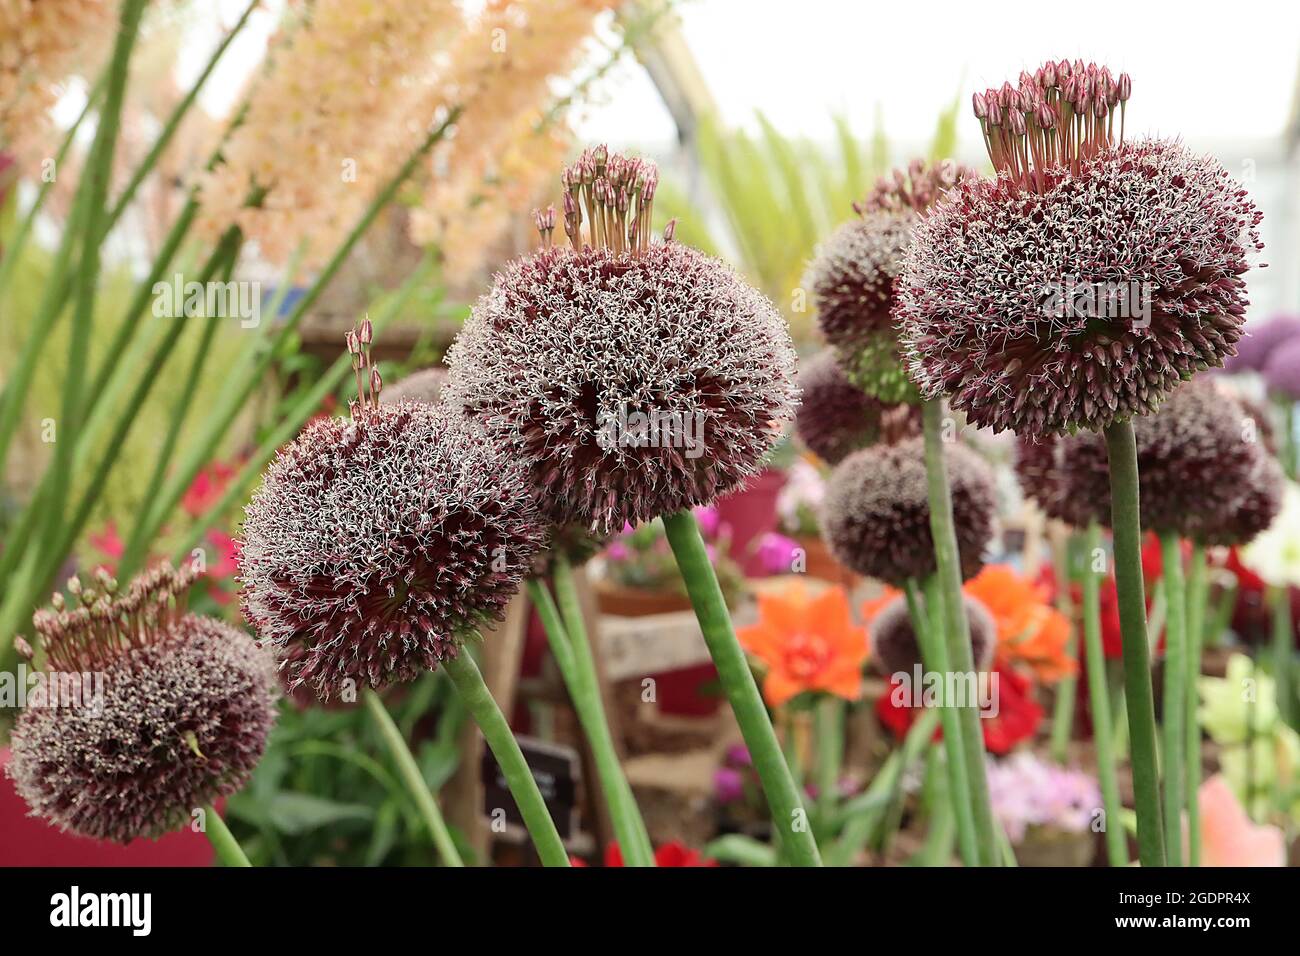 Allium amethystinum ‘Forelock’ tufts de grappes de fleurs à tiges au sommet d’une ombelle sphérique de fleurs en forme de fil provenant de calyces violets, juillet, Angleterre, Royaume-Uni Banque D'Images